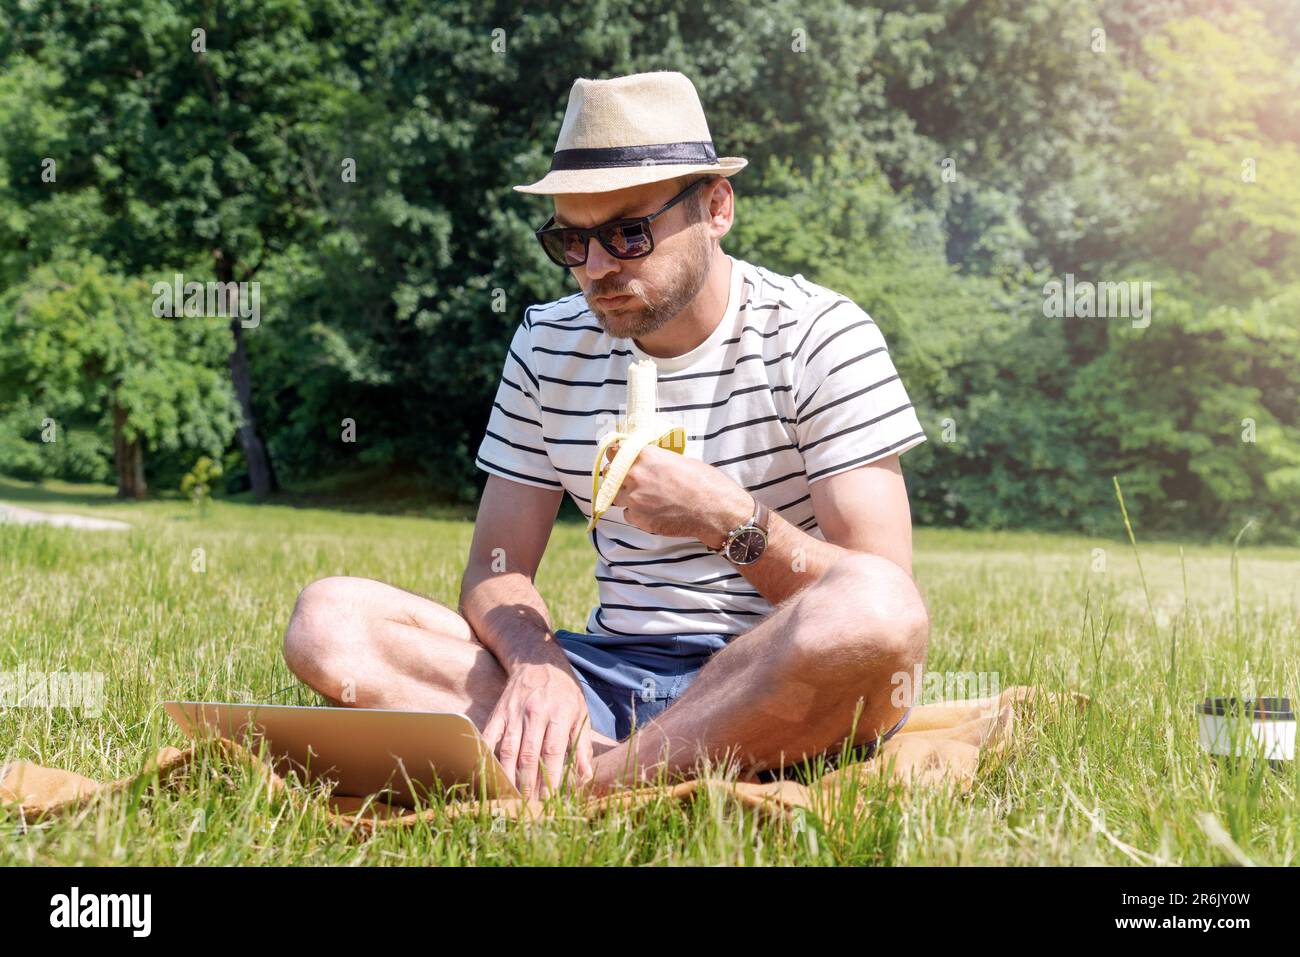 Ein Mann isst Banane, während er auf einem grünen Rasen im Park sitzt und am Laptop arbeitet. Stockfoto